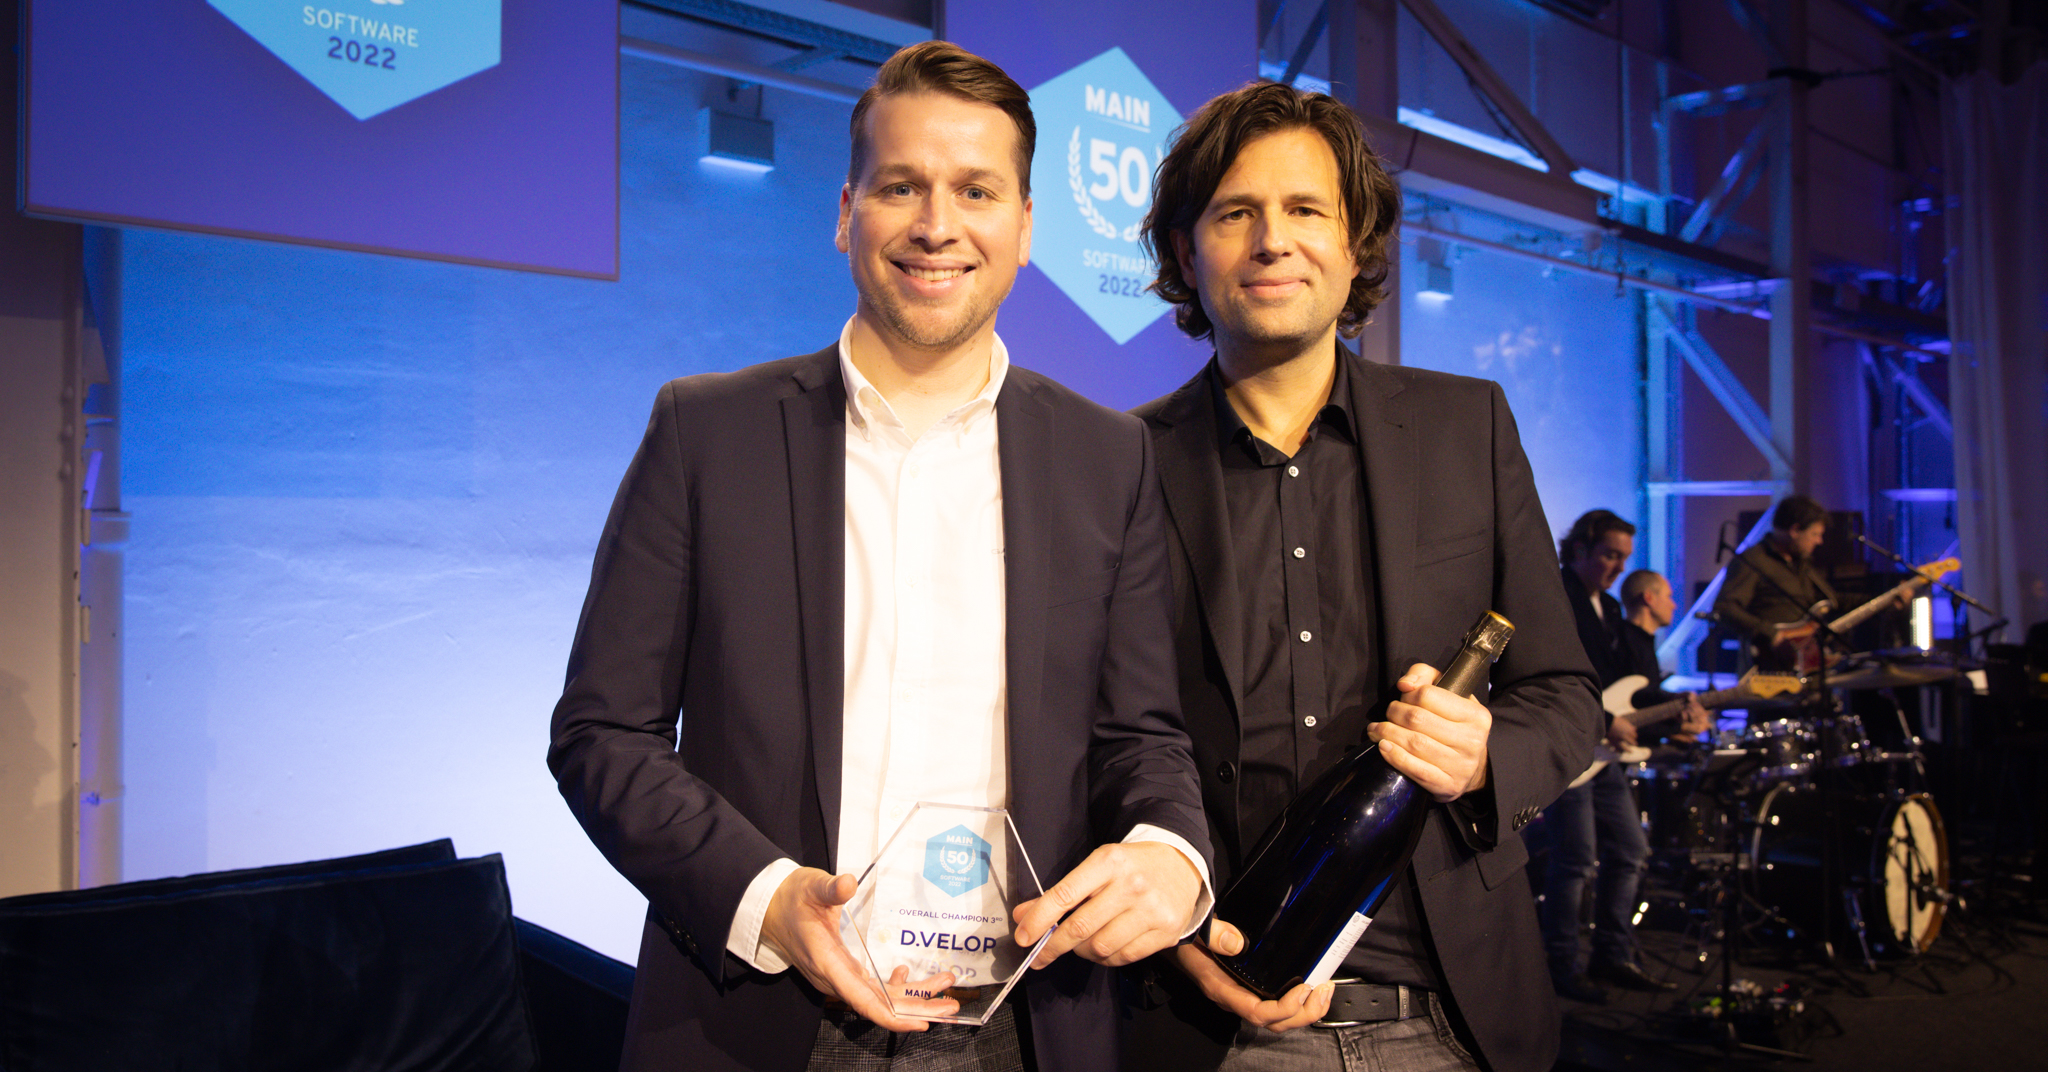 Sebastian Evers (links) und Rainer Hehmann, Vorstände von d.velop, bei der Preisverleihung der MAIN Software 50 Awards 2022